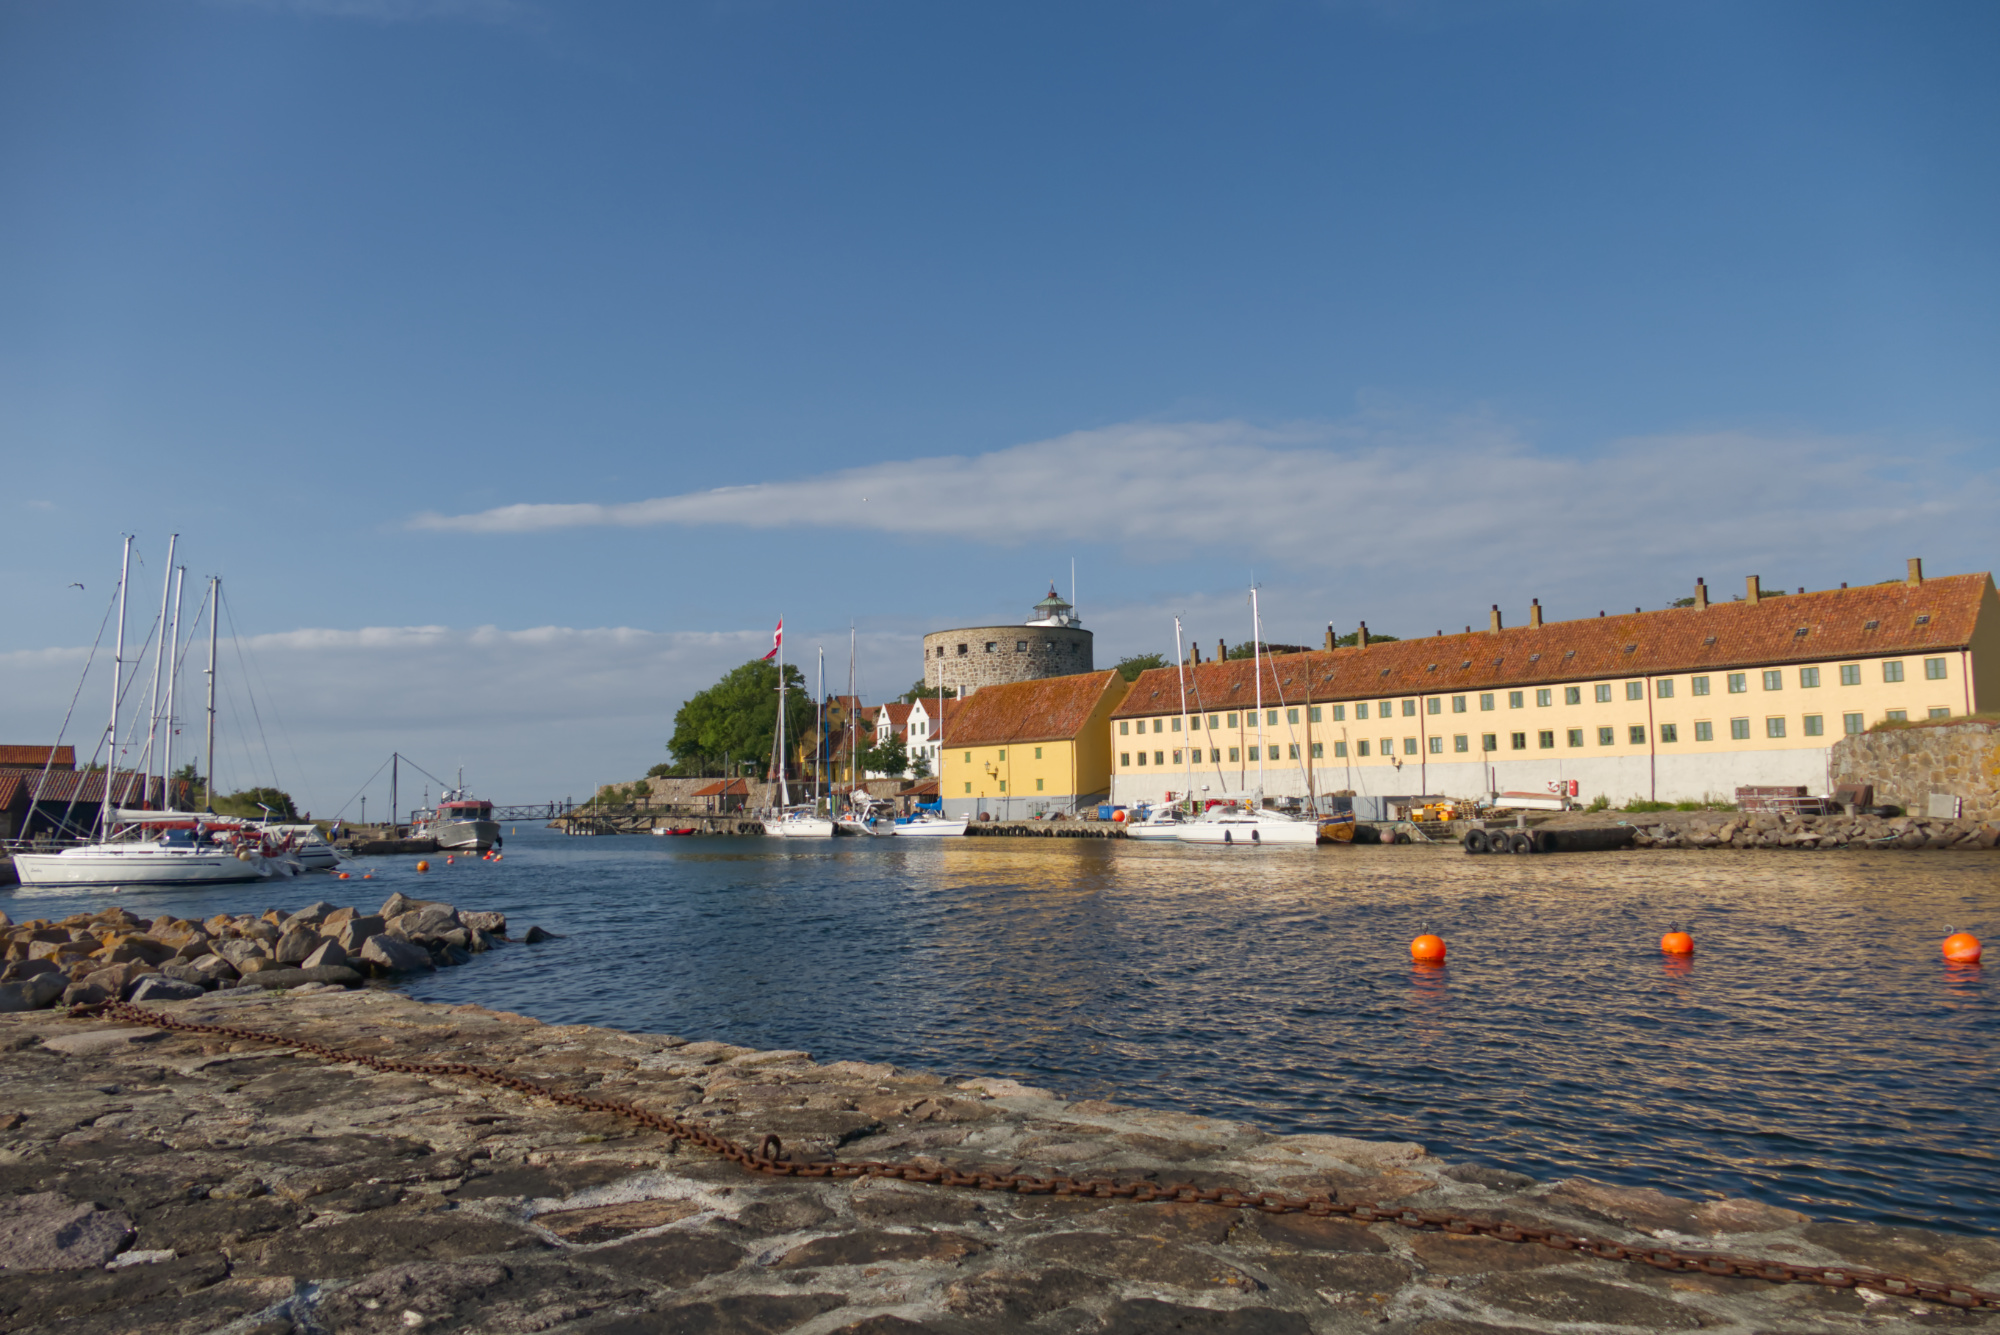 Hafen von Christiansø